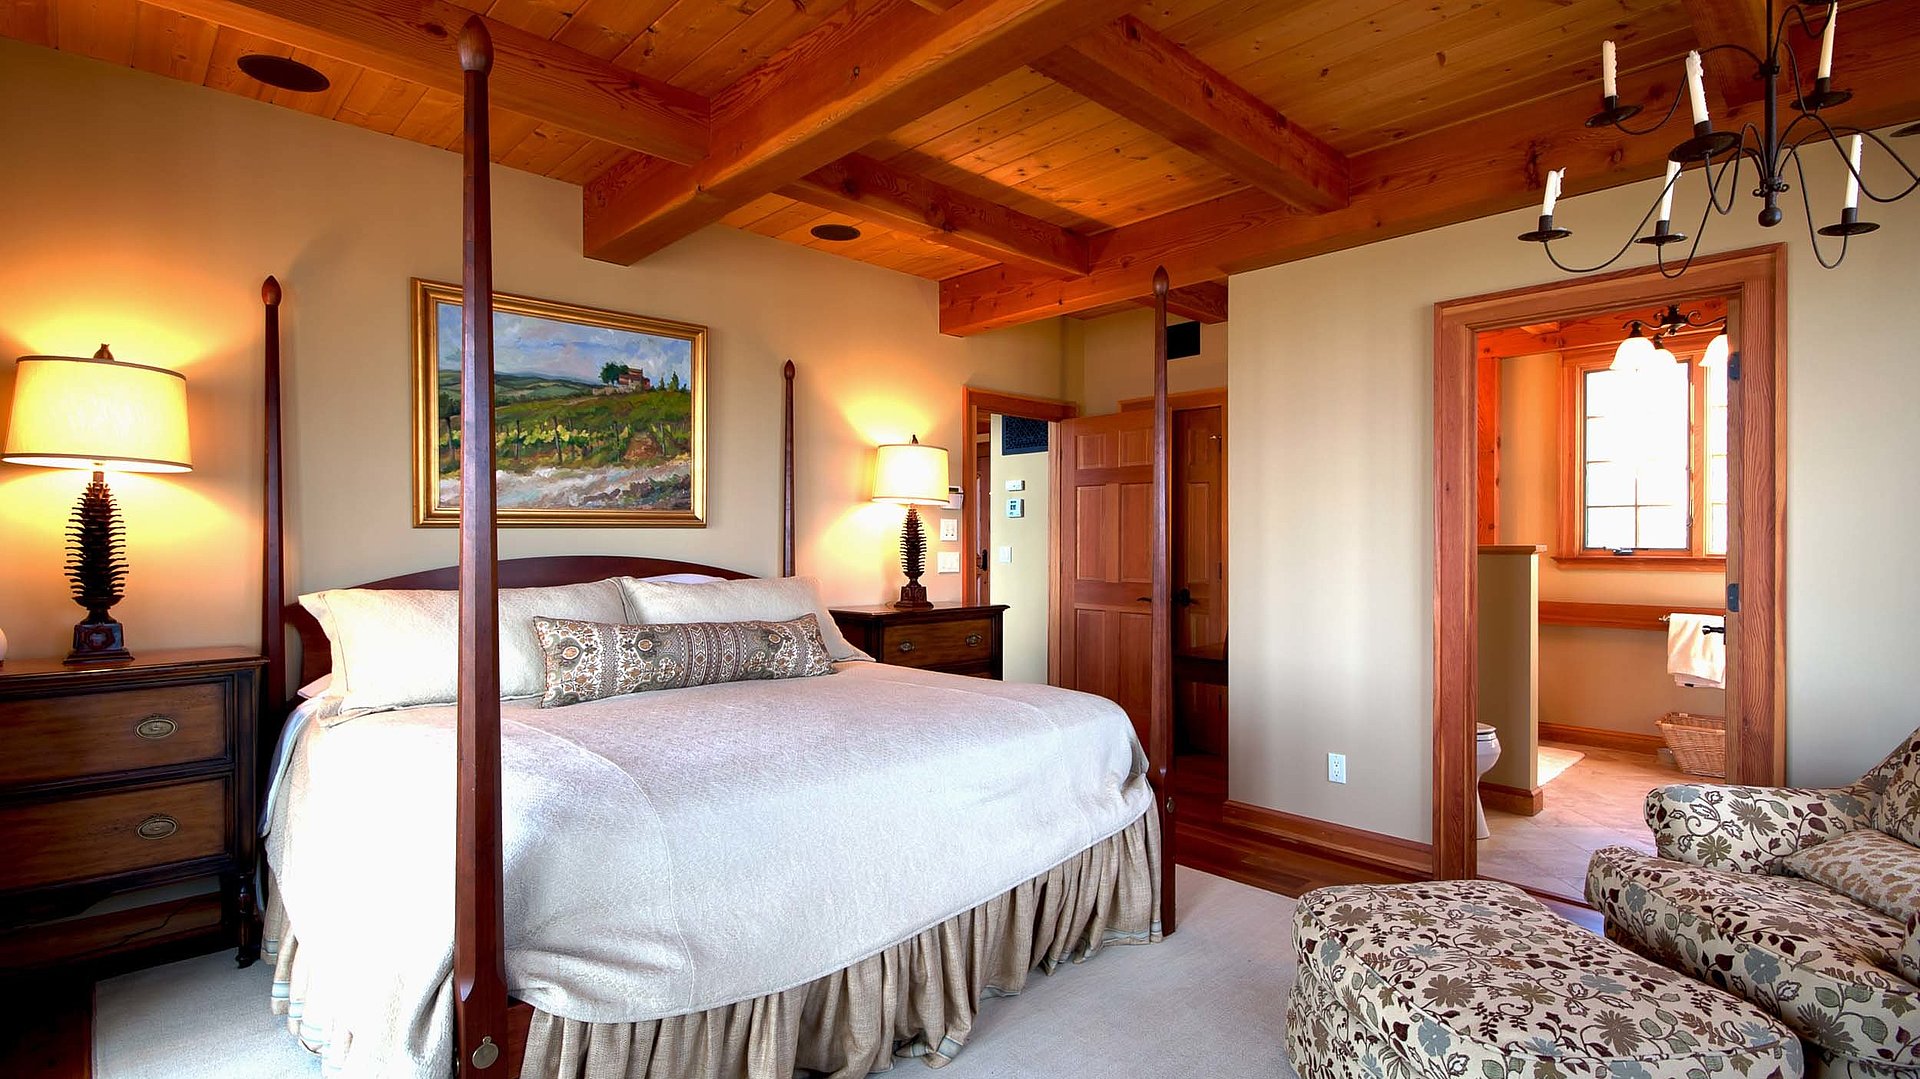 Exklusive Ferienwohnungen in Ostbayern - sehr ordentliches Hotelzimmer mit großem Bett, warmer Nachtlampe und Wandgemälde